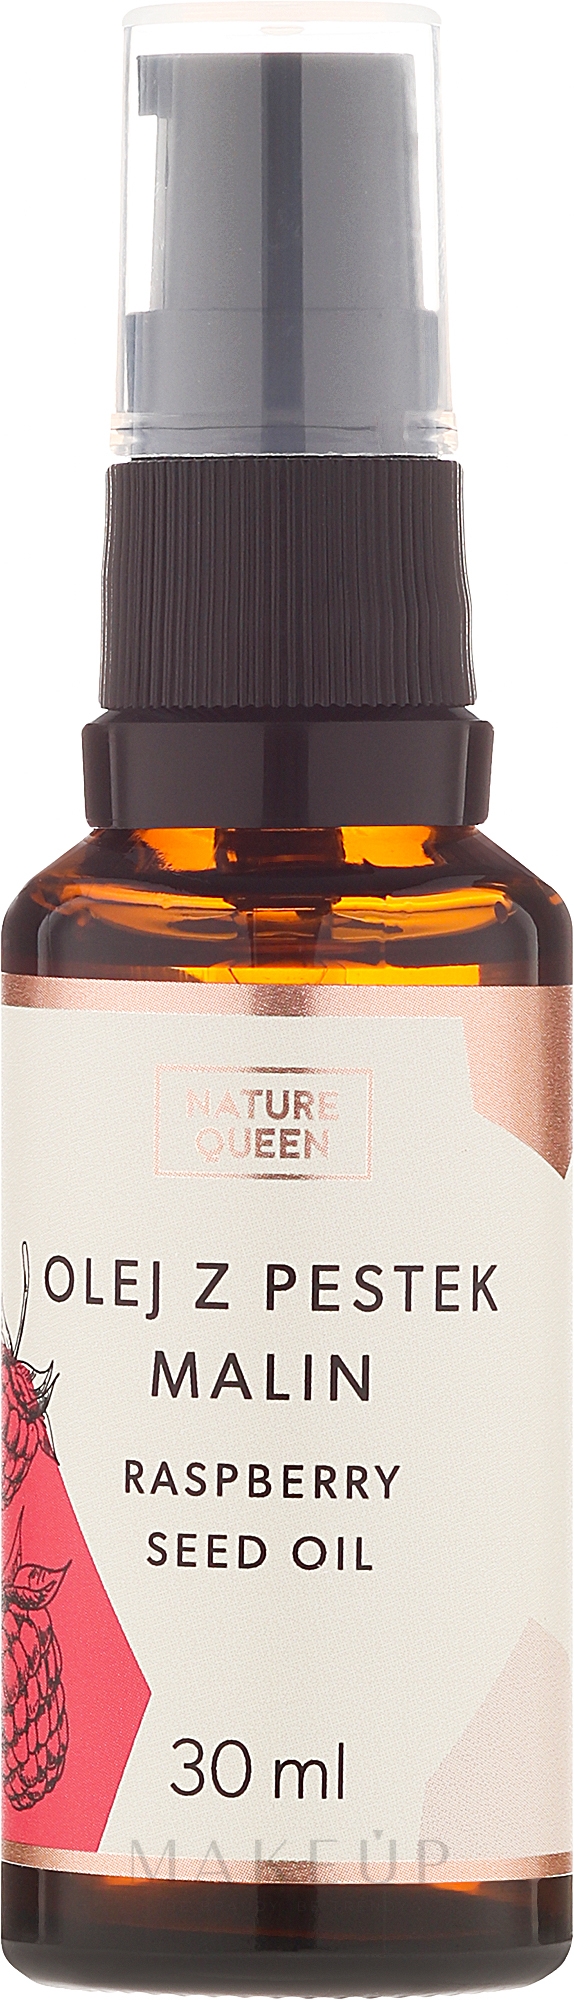 Himbeersamenöl - Nature Queen Raspberry Seed Oil — Foto 30 ml